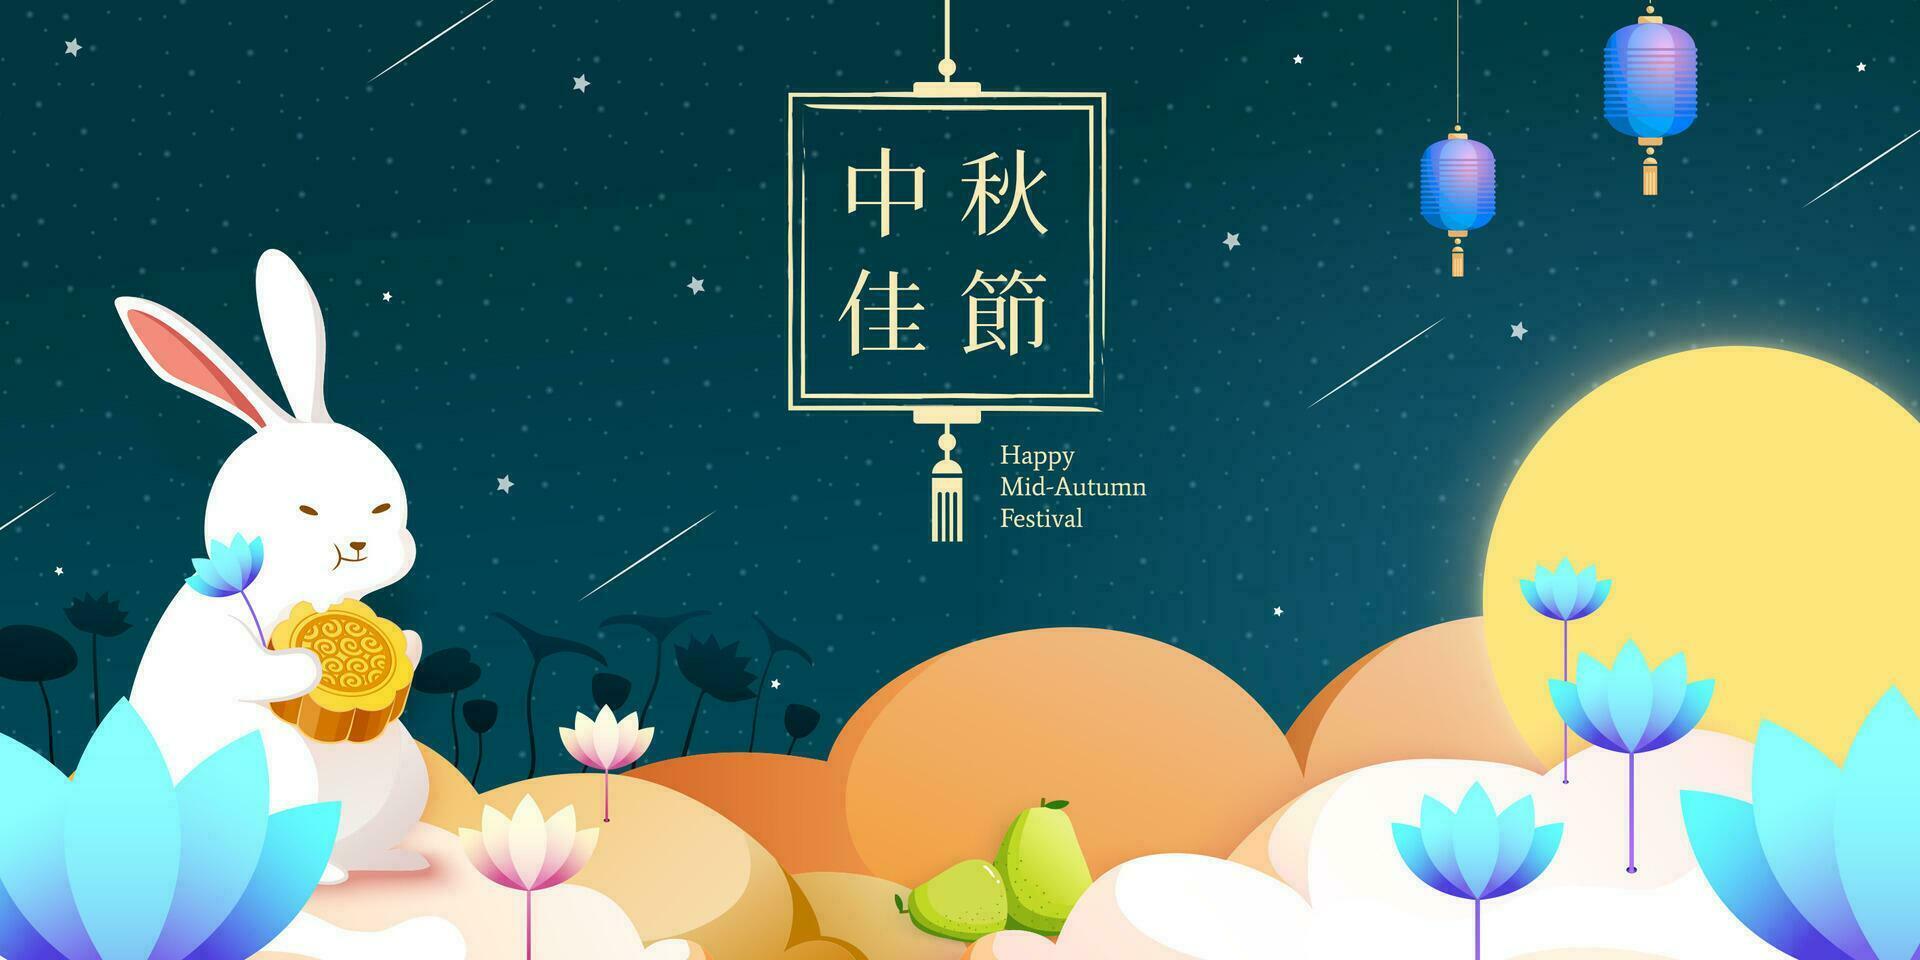 schön Jade Hase genießen Mondkuchen und halten Lotus Poster, Mitte Herbst Festival geschrieben im Chinesisch Wörter vektor